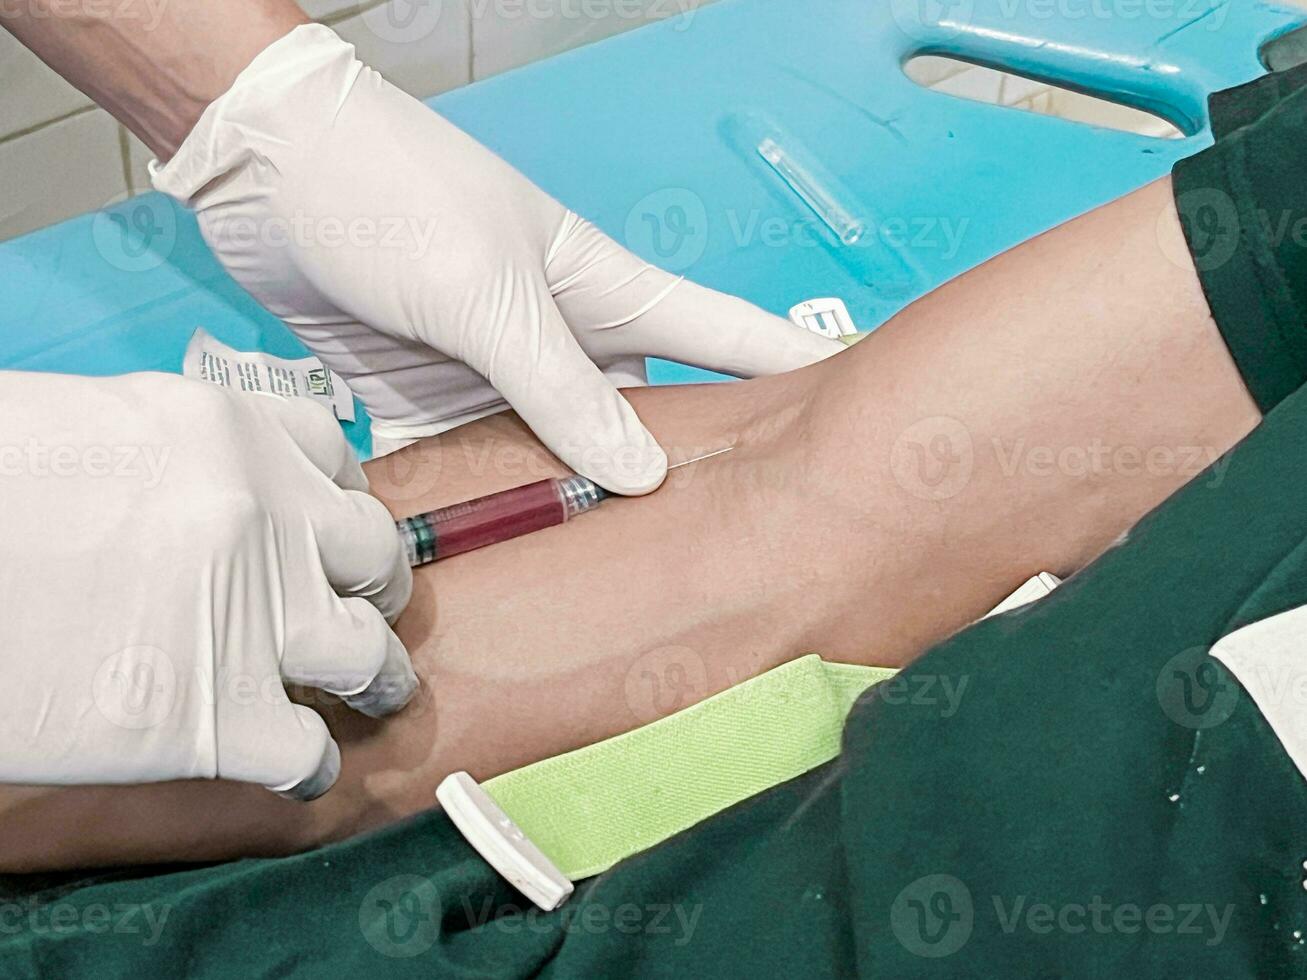 en manlig sjuksköterska är injicering en smärta lättnad bedövningsmedel in i en patientens hand foto